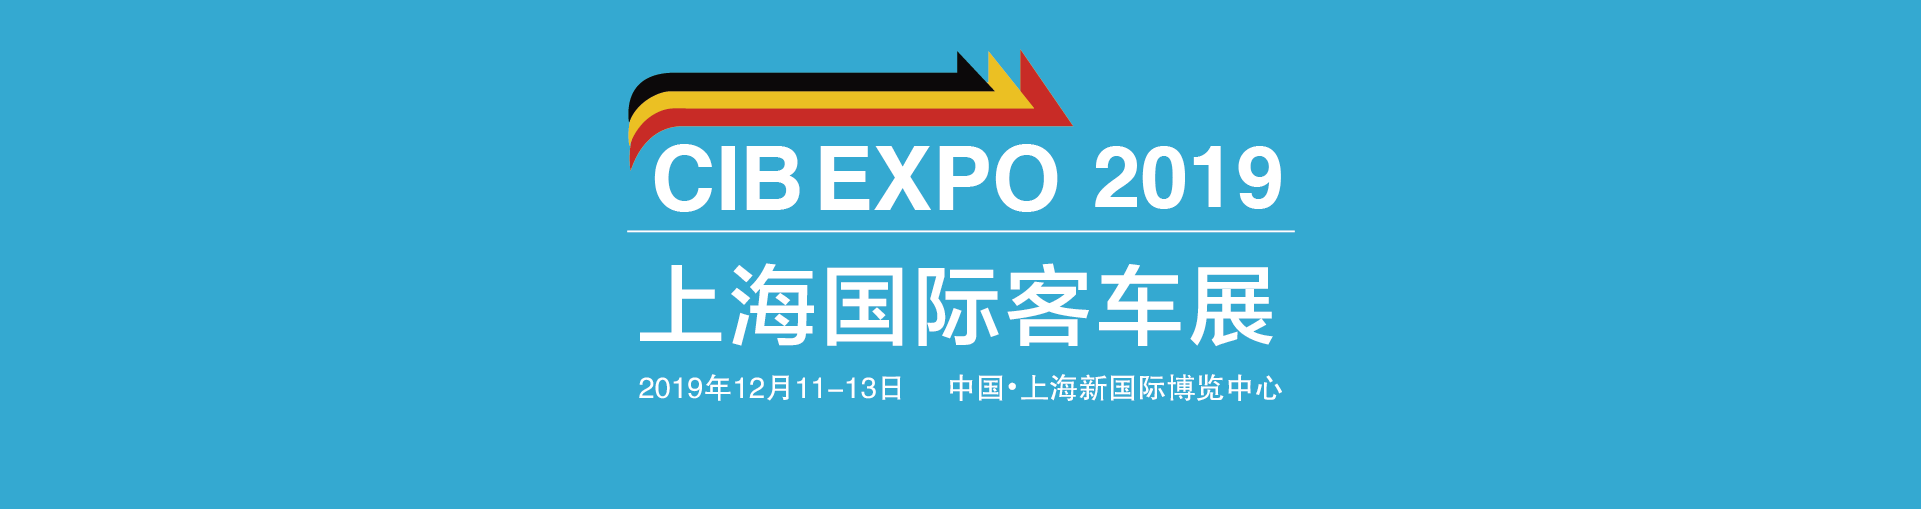 把脉新趋势，寻找新突破——CIB EXPO 2019上海国际客车展同期活动一览